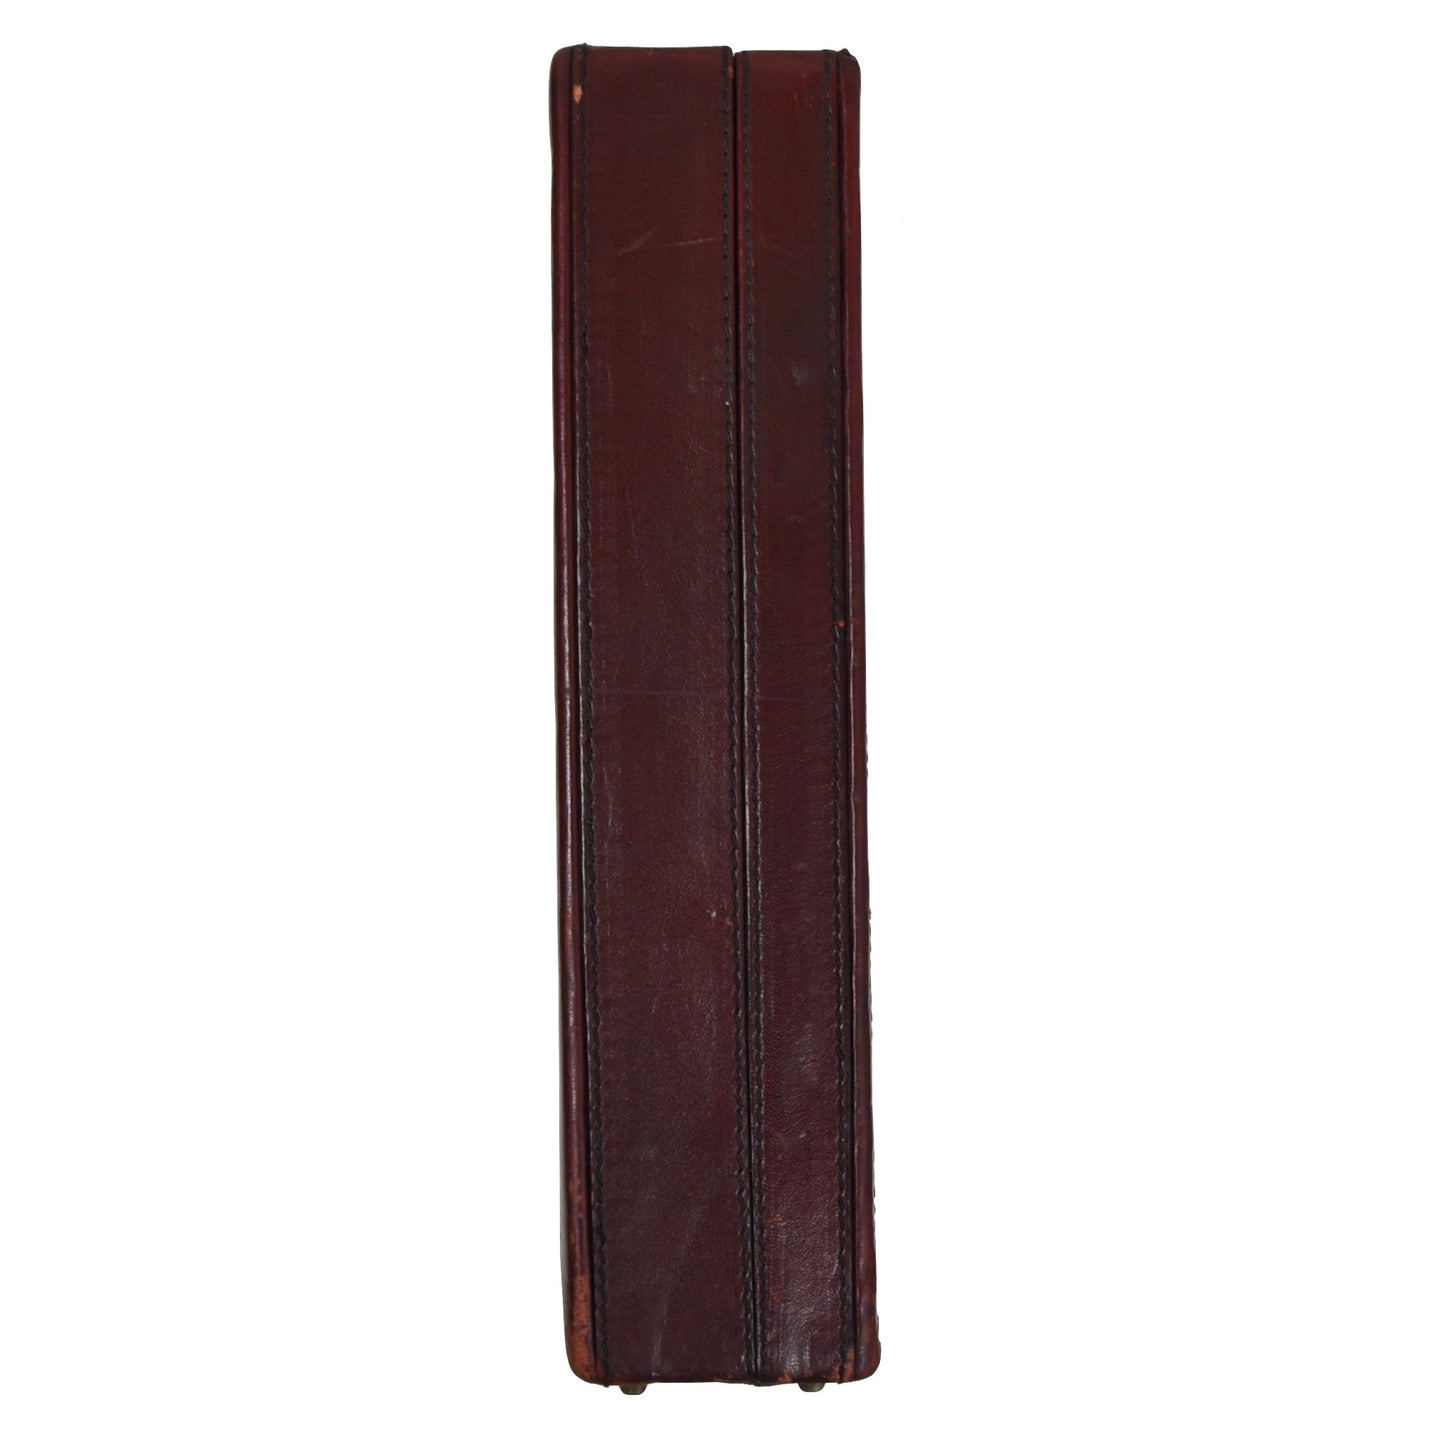 Goldpfeil Sport Leather Briefcase - Burgundy